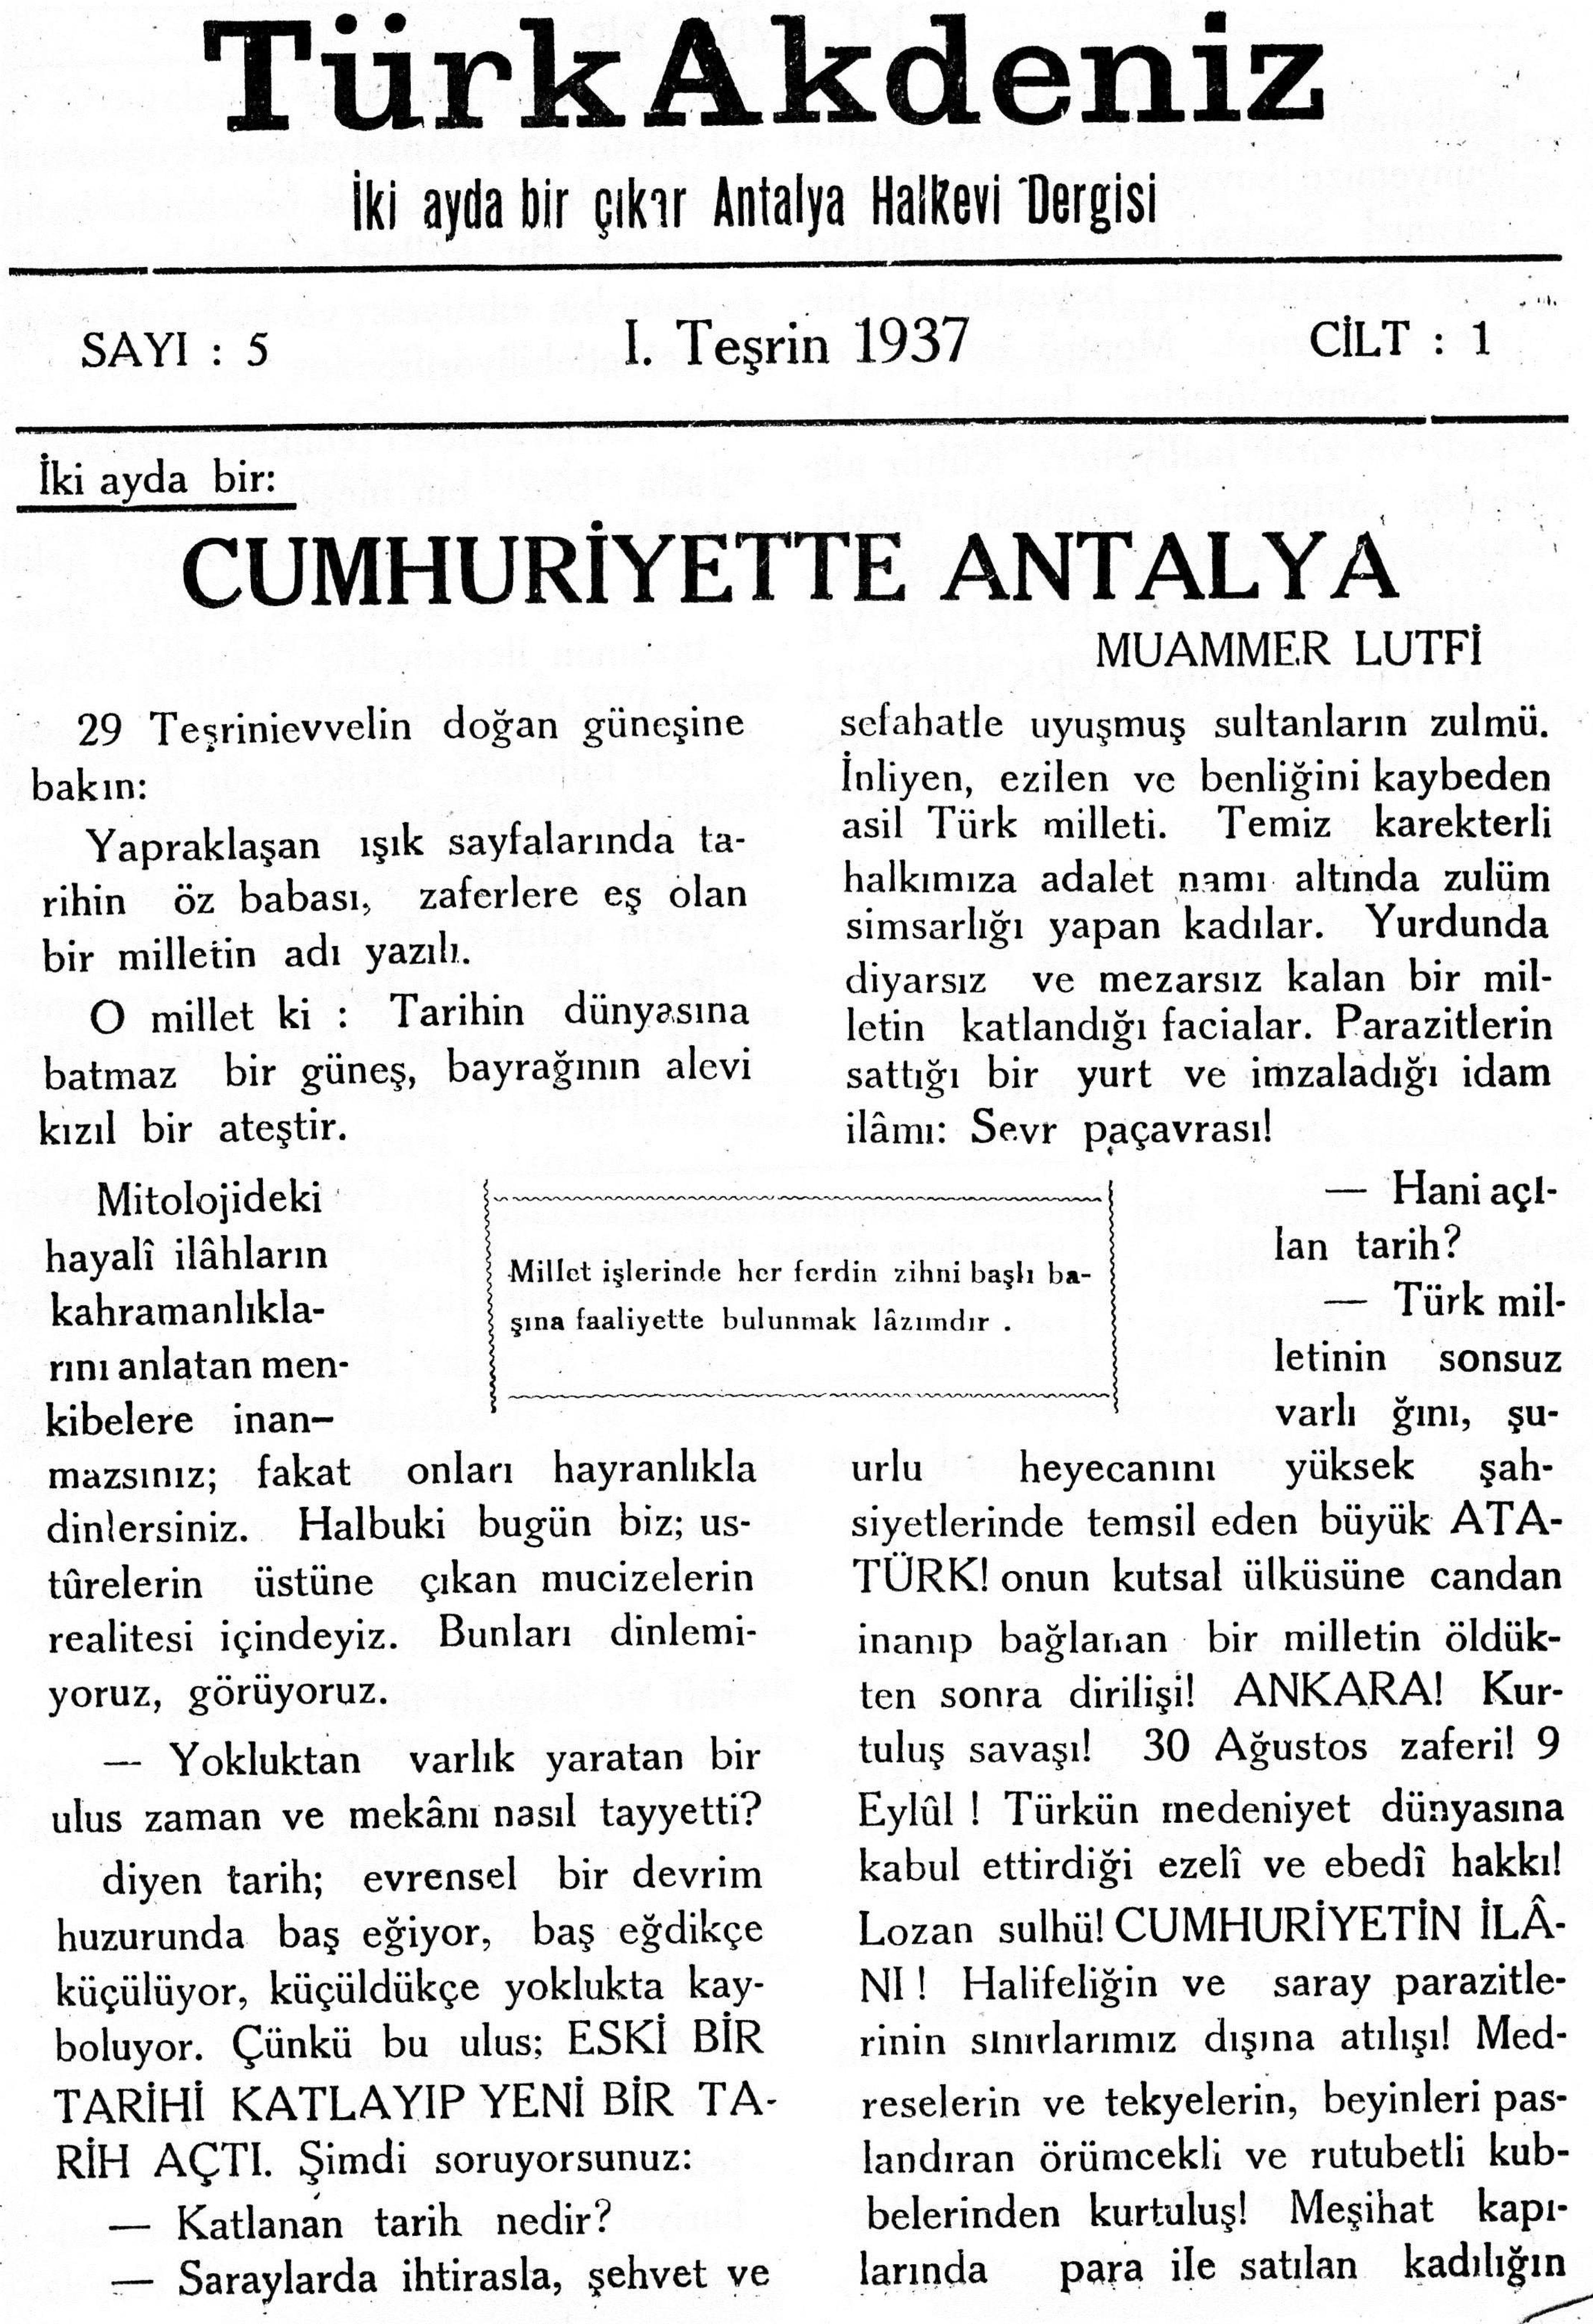 he-turk-akdeniz_1937-1(05)